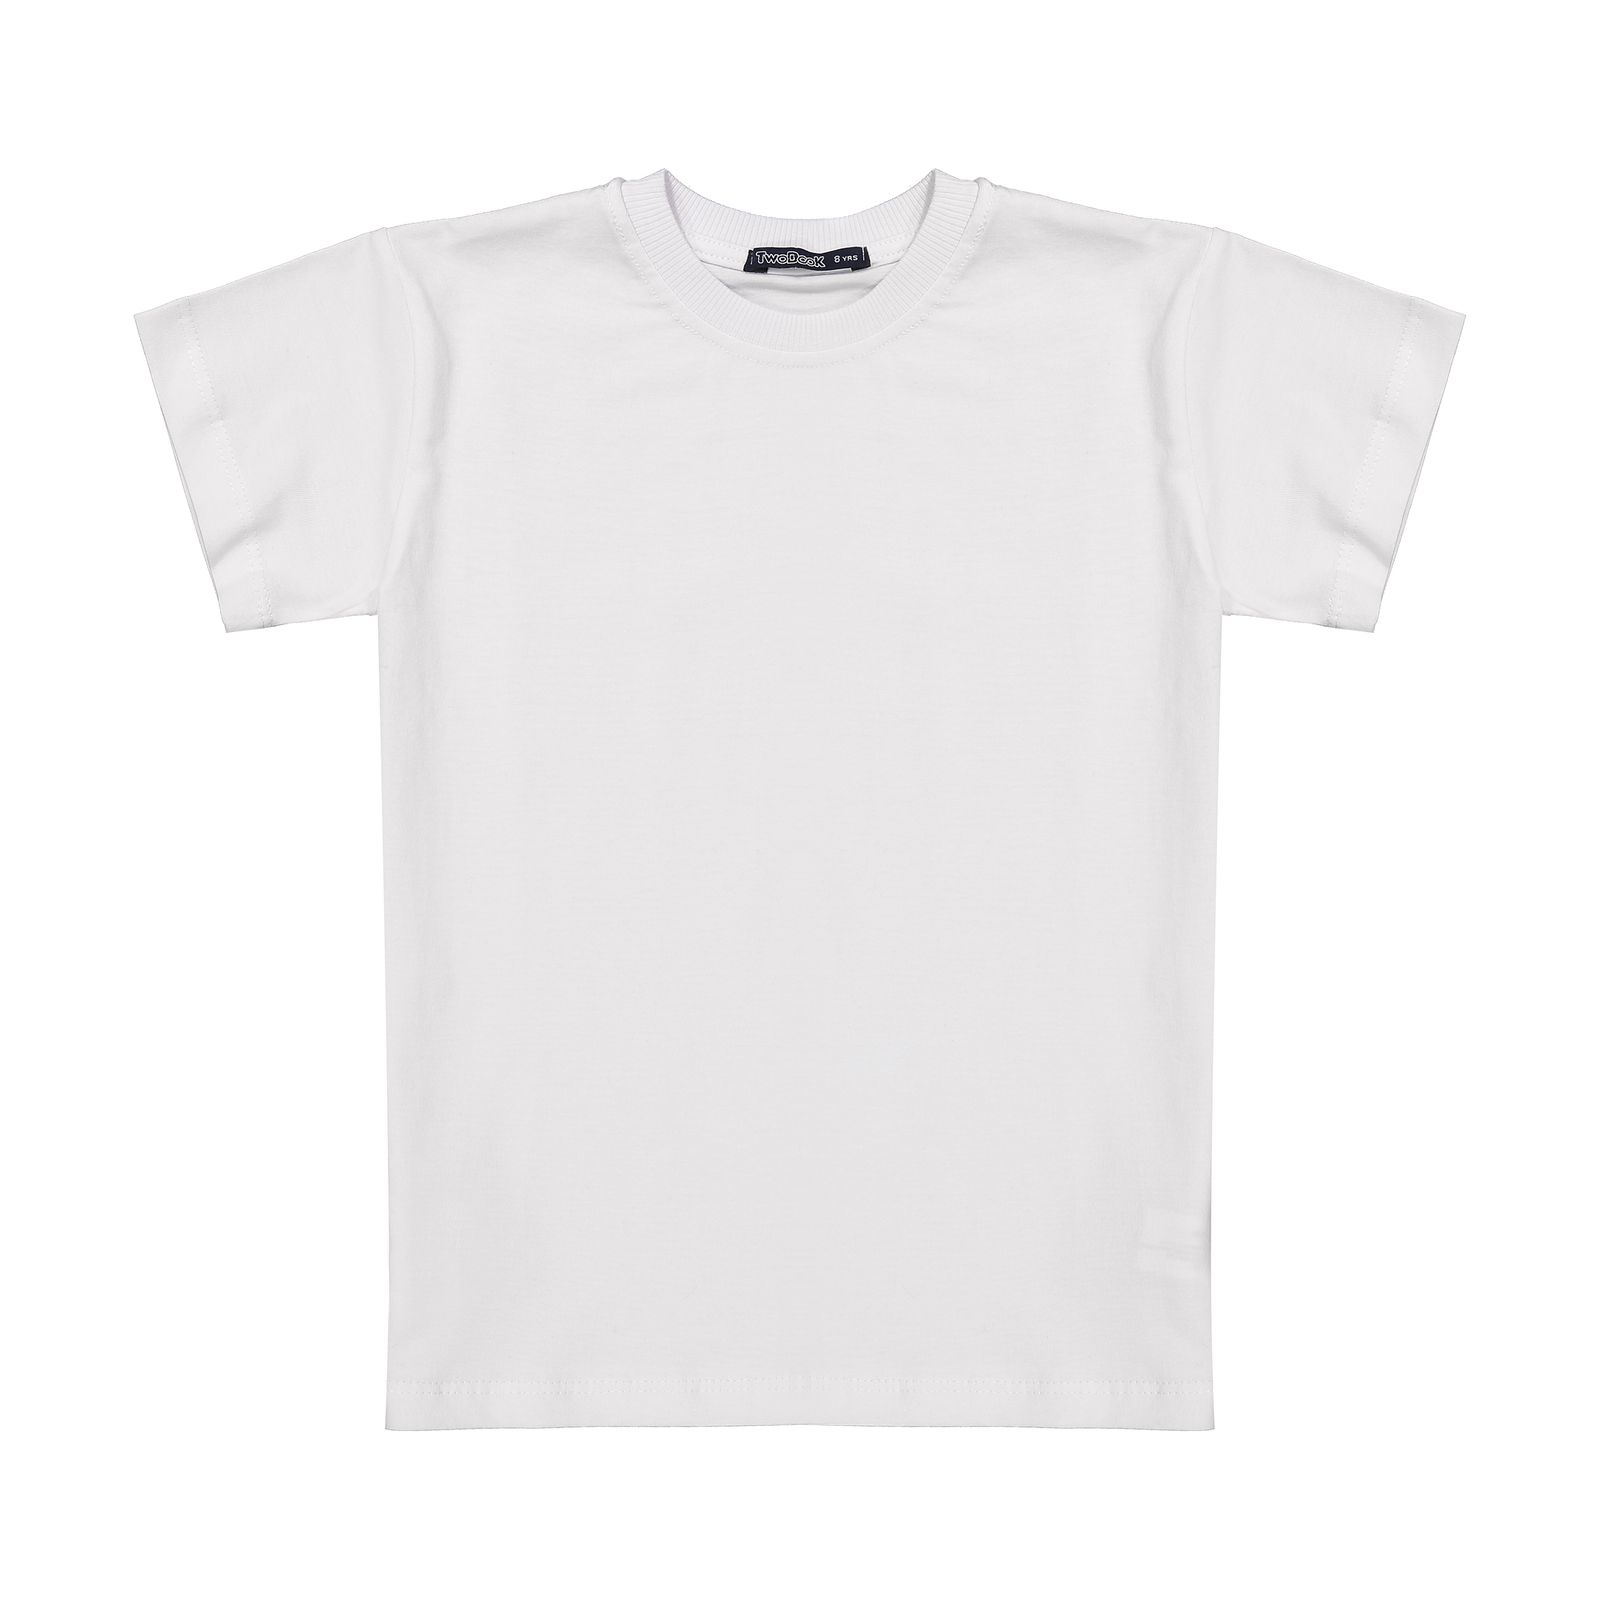 تی شرت آستین کوتاه دخترانه تودوک مدل 2151614-01 -  - 1